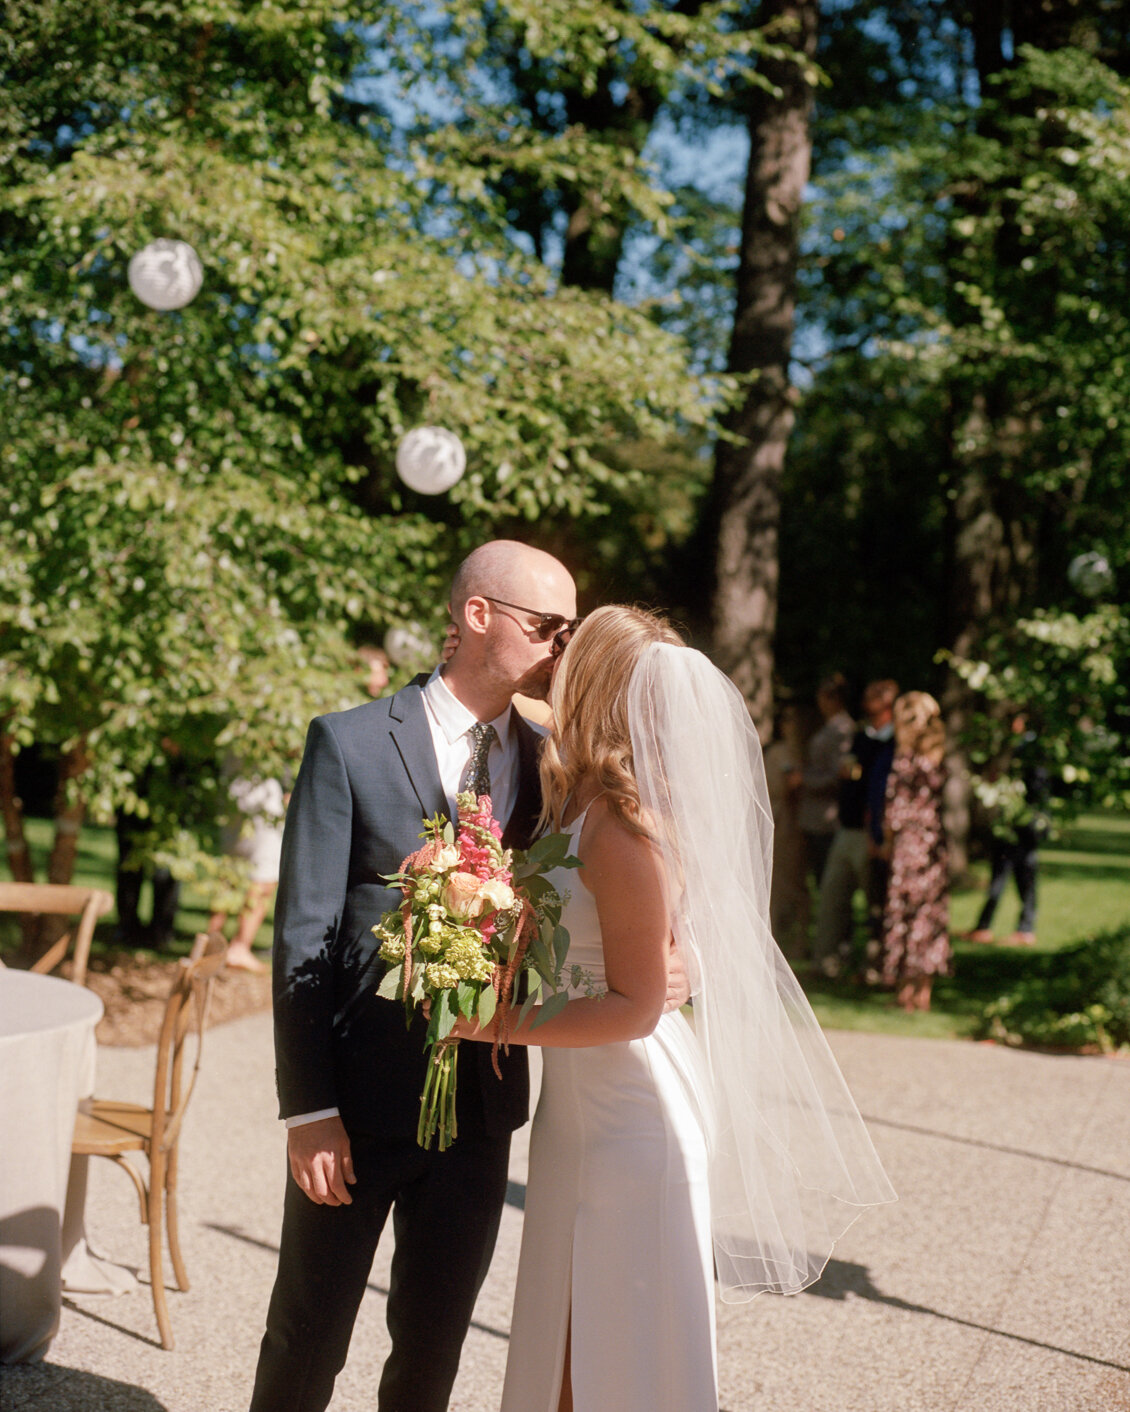 Analog-Film-Micro-Wedding-Photos-Inspiration-Backyard-Toronto-Ontario-49.JPG